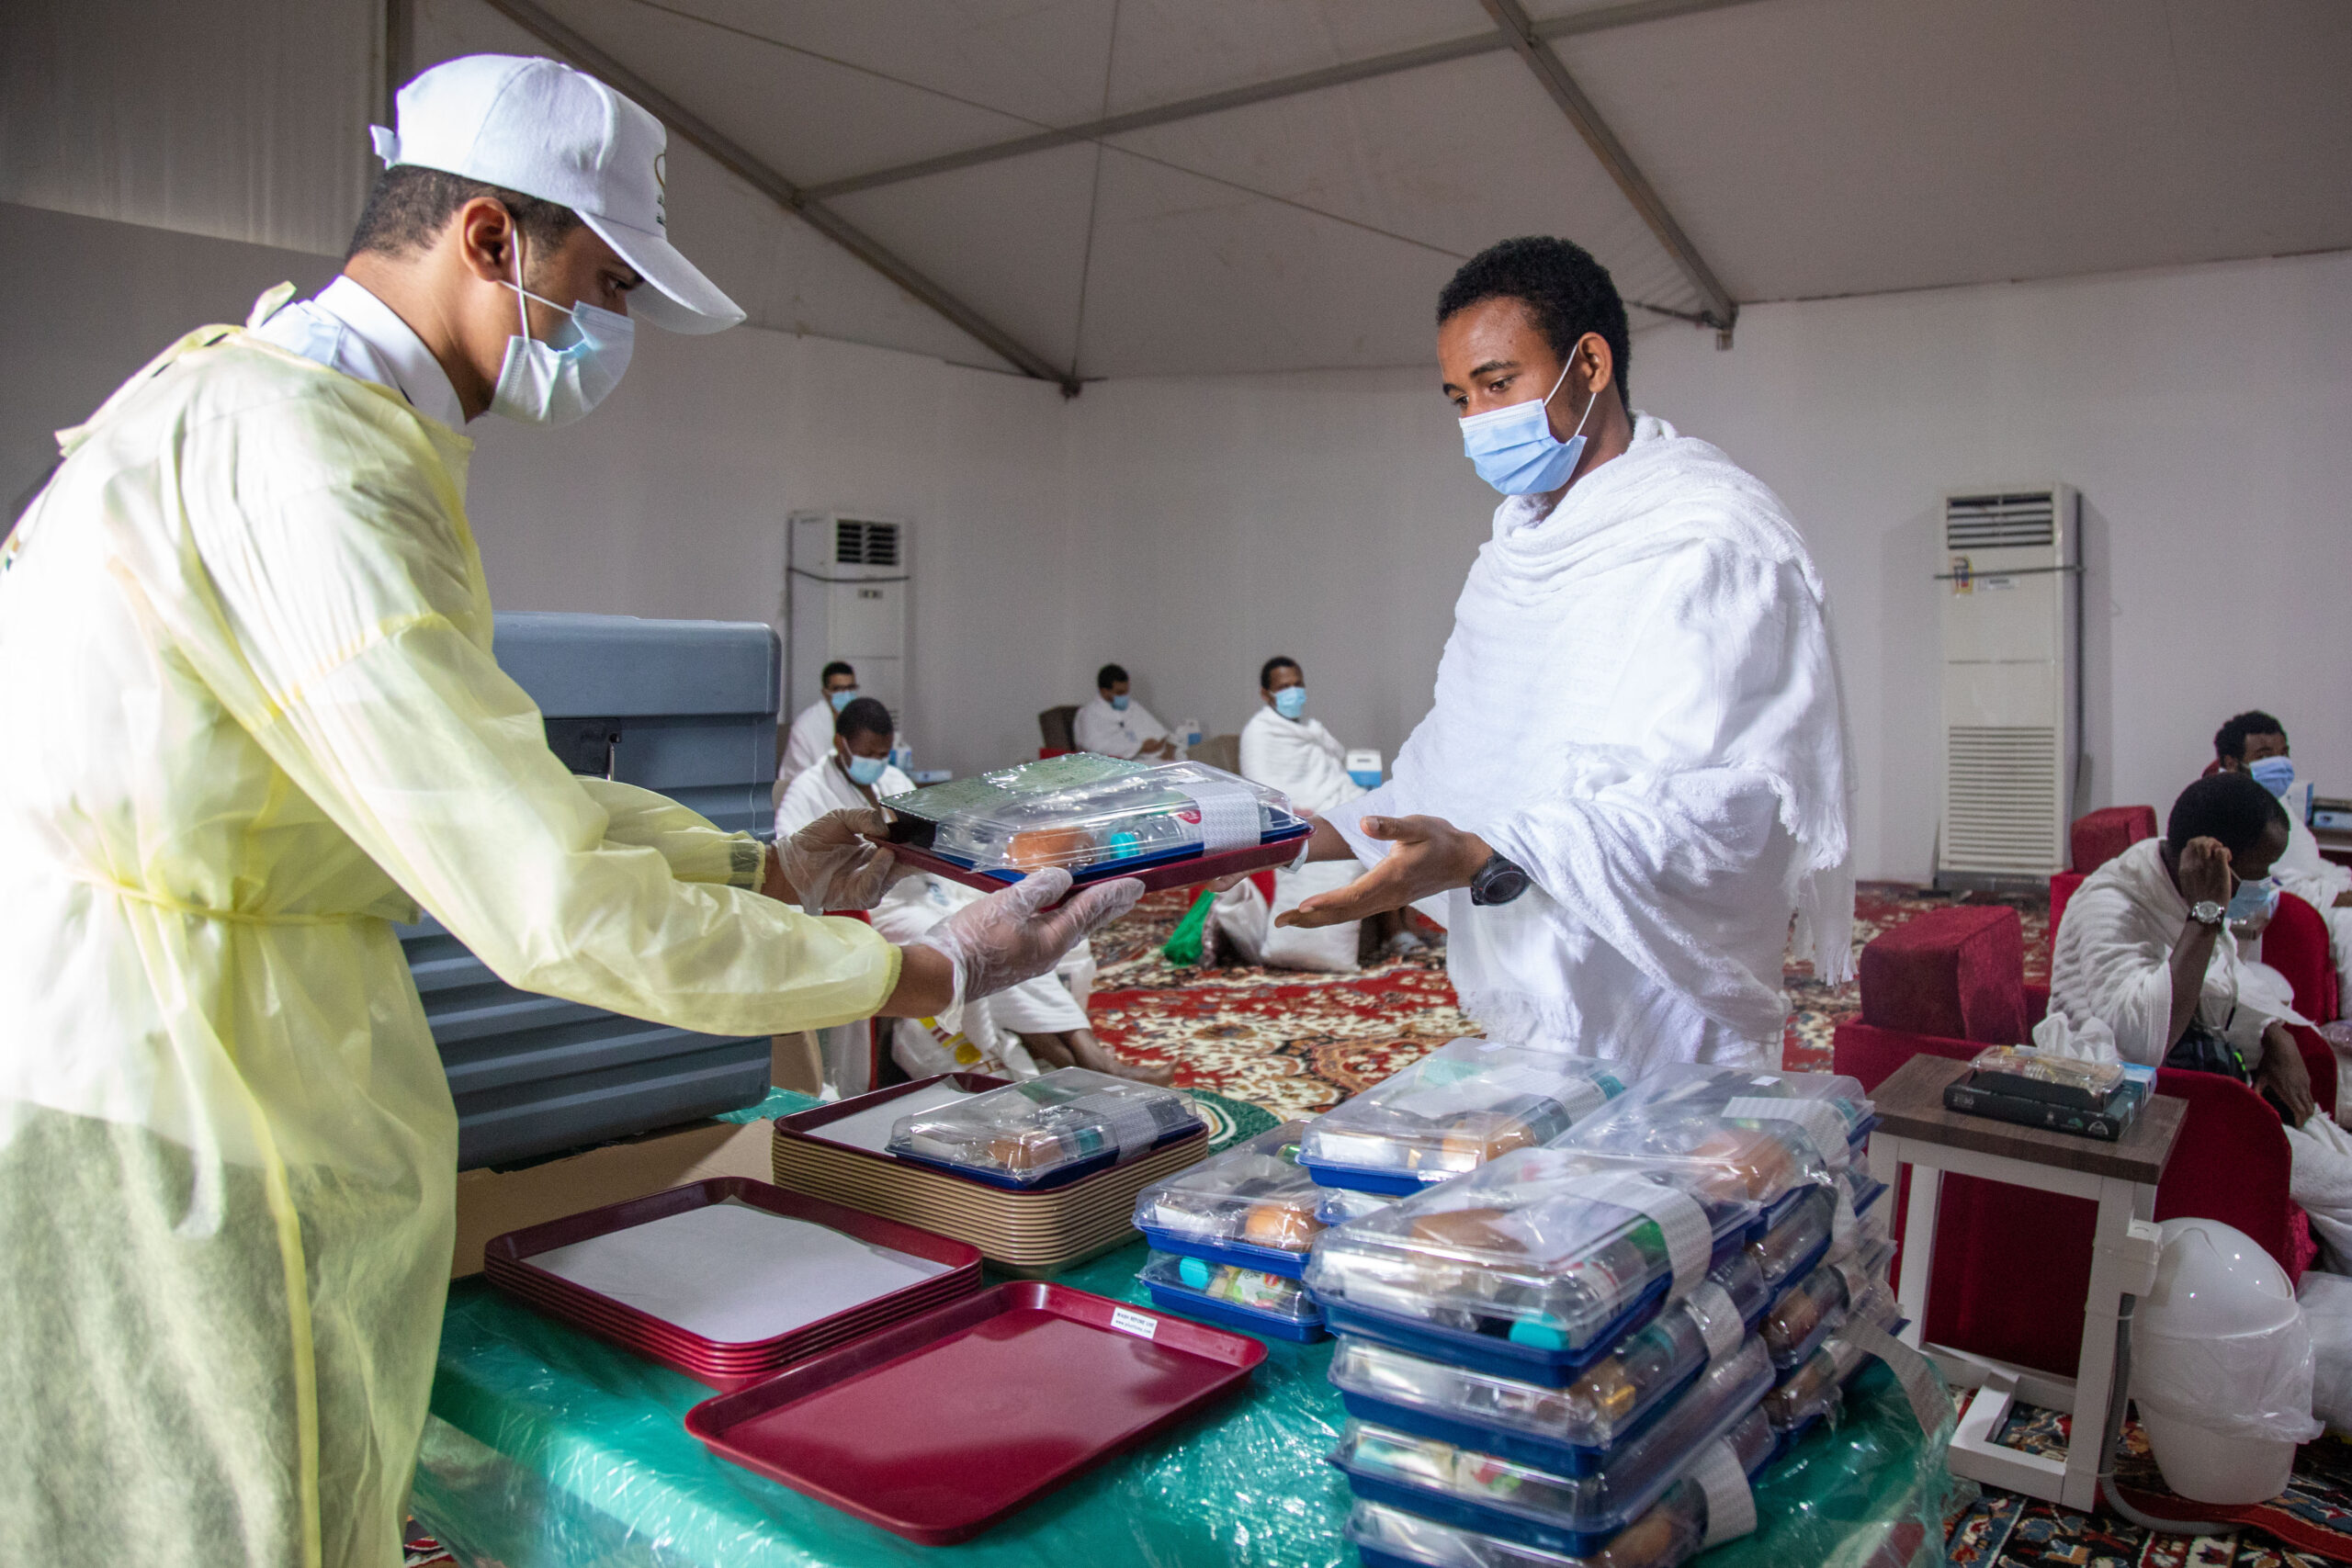 Haji1441 – Petugas periksa sampel makanan jamaah, pastikan keamanan